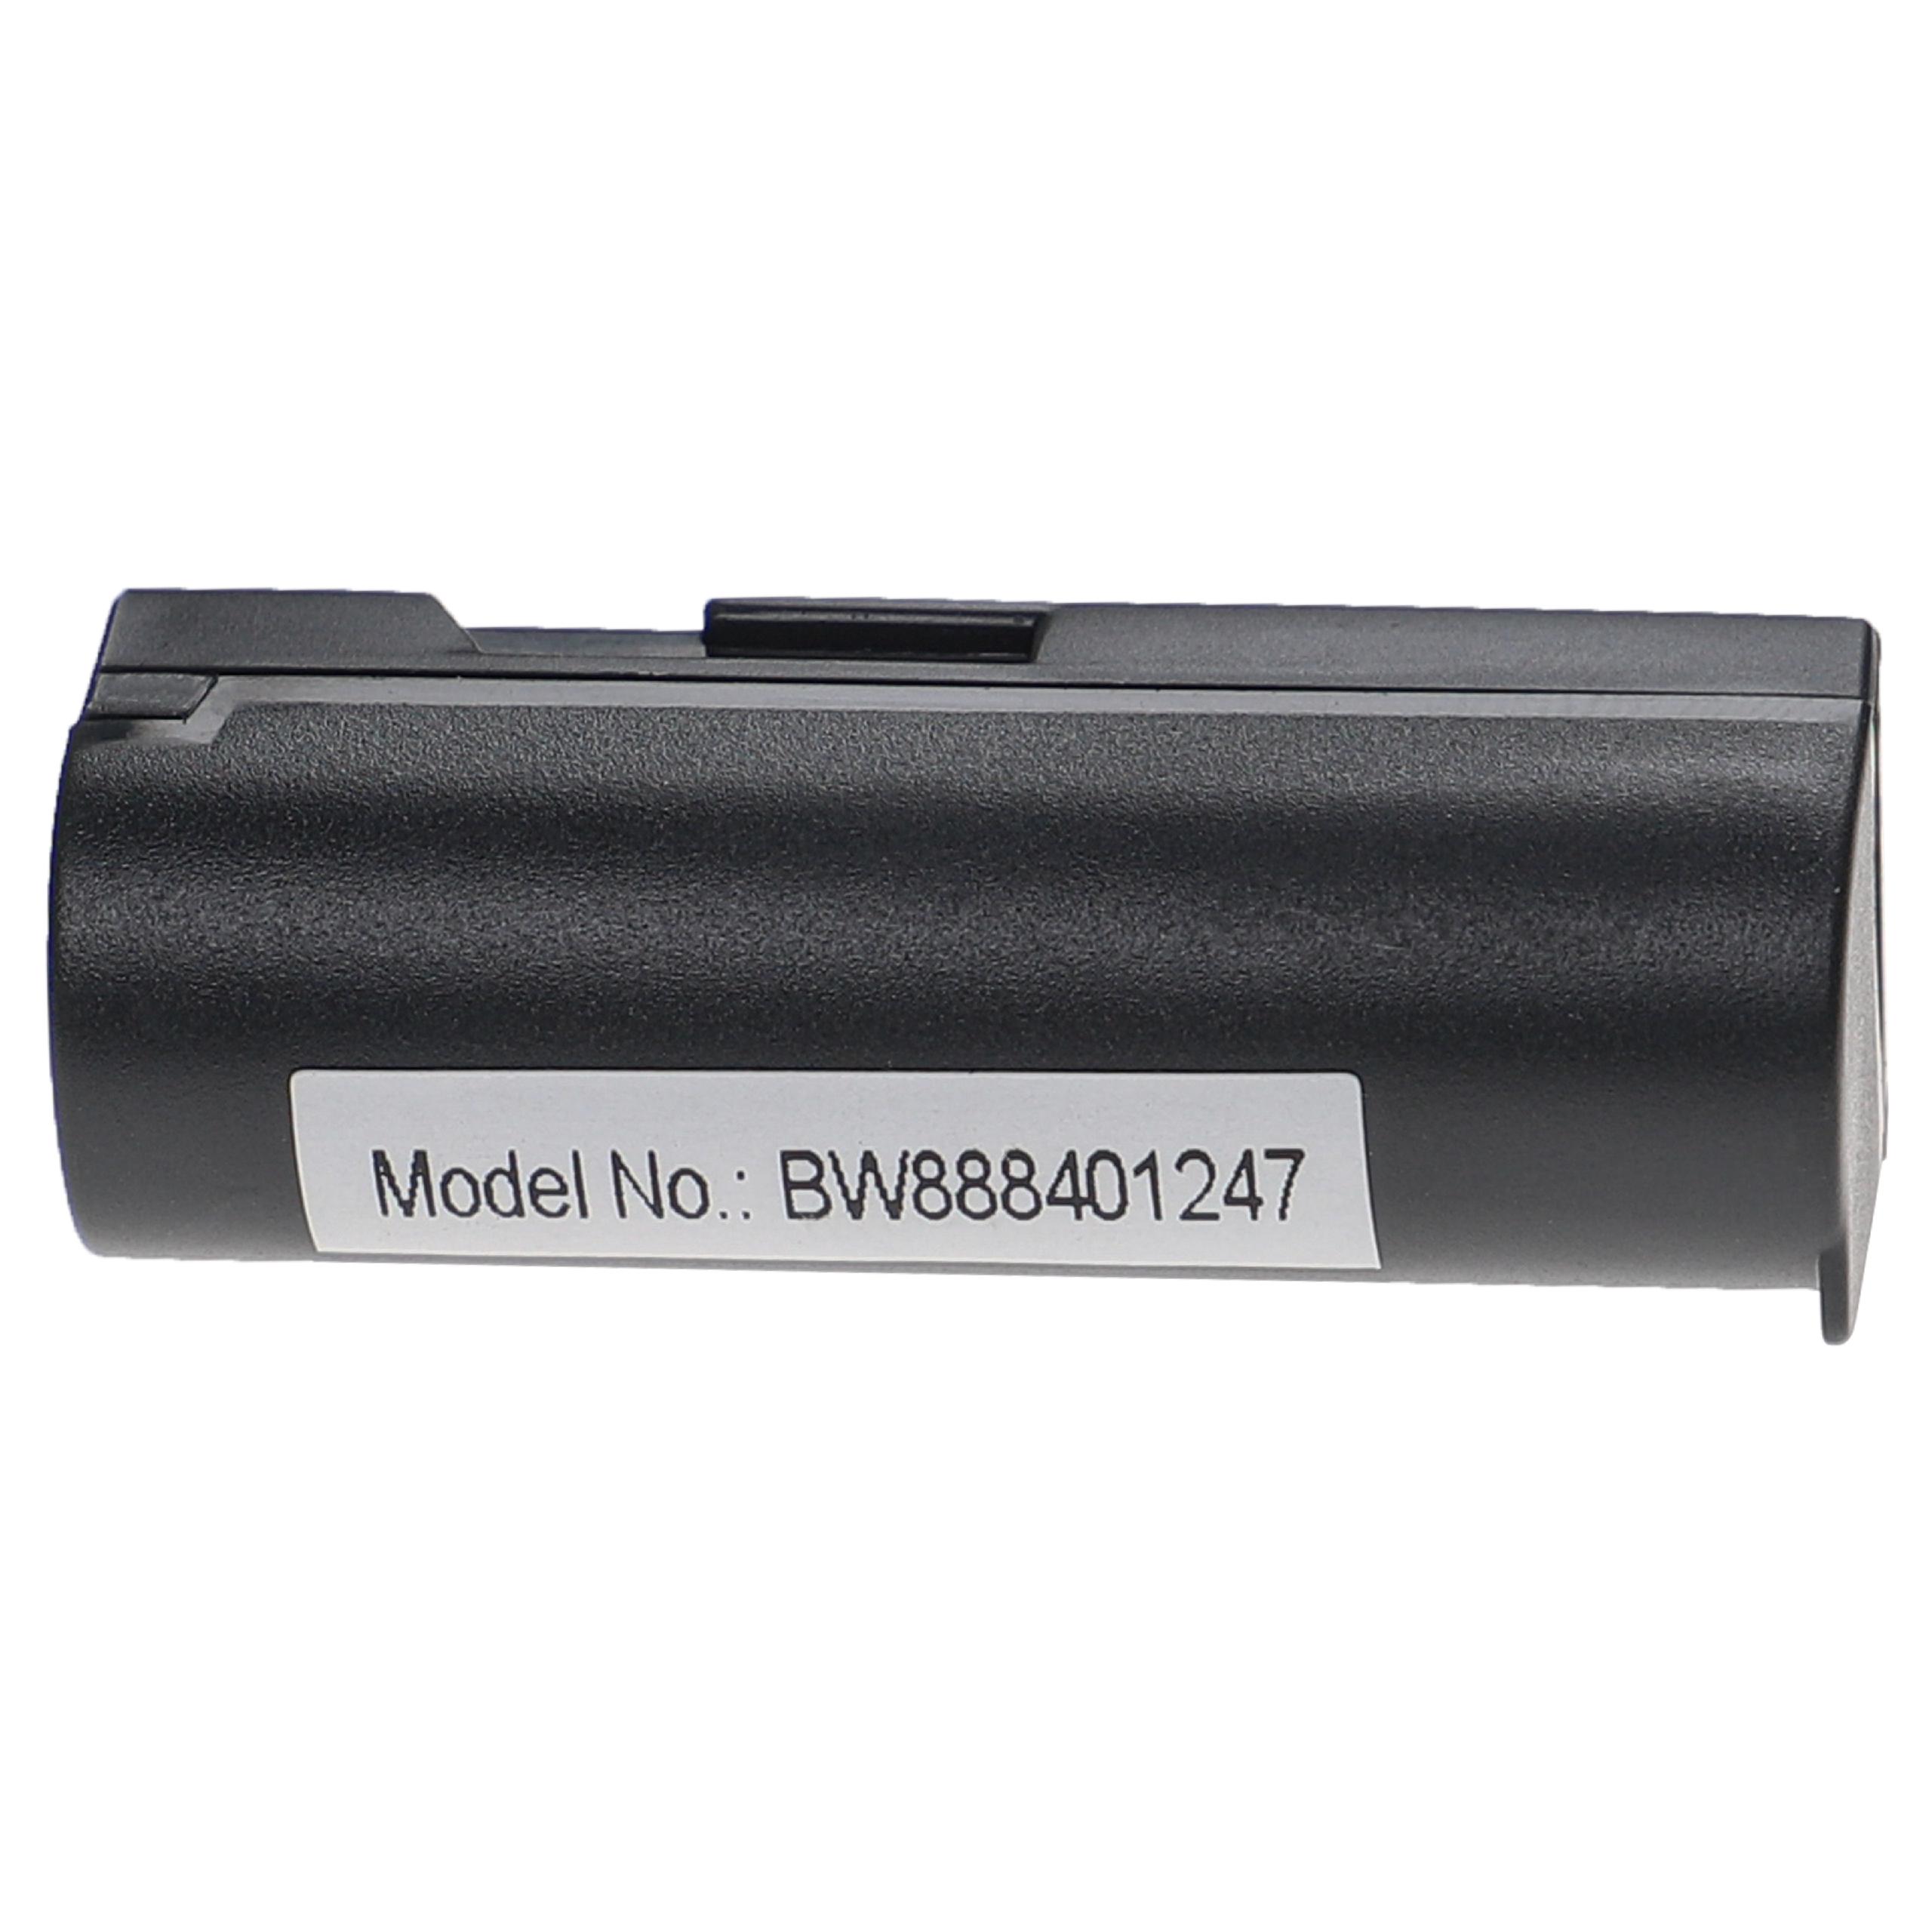 Batteries (2x pièces) remplace Konica Minolta NP-700 pour appareil photo - 700mAh 3,7V Li-ion